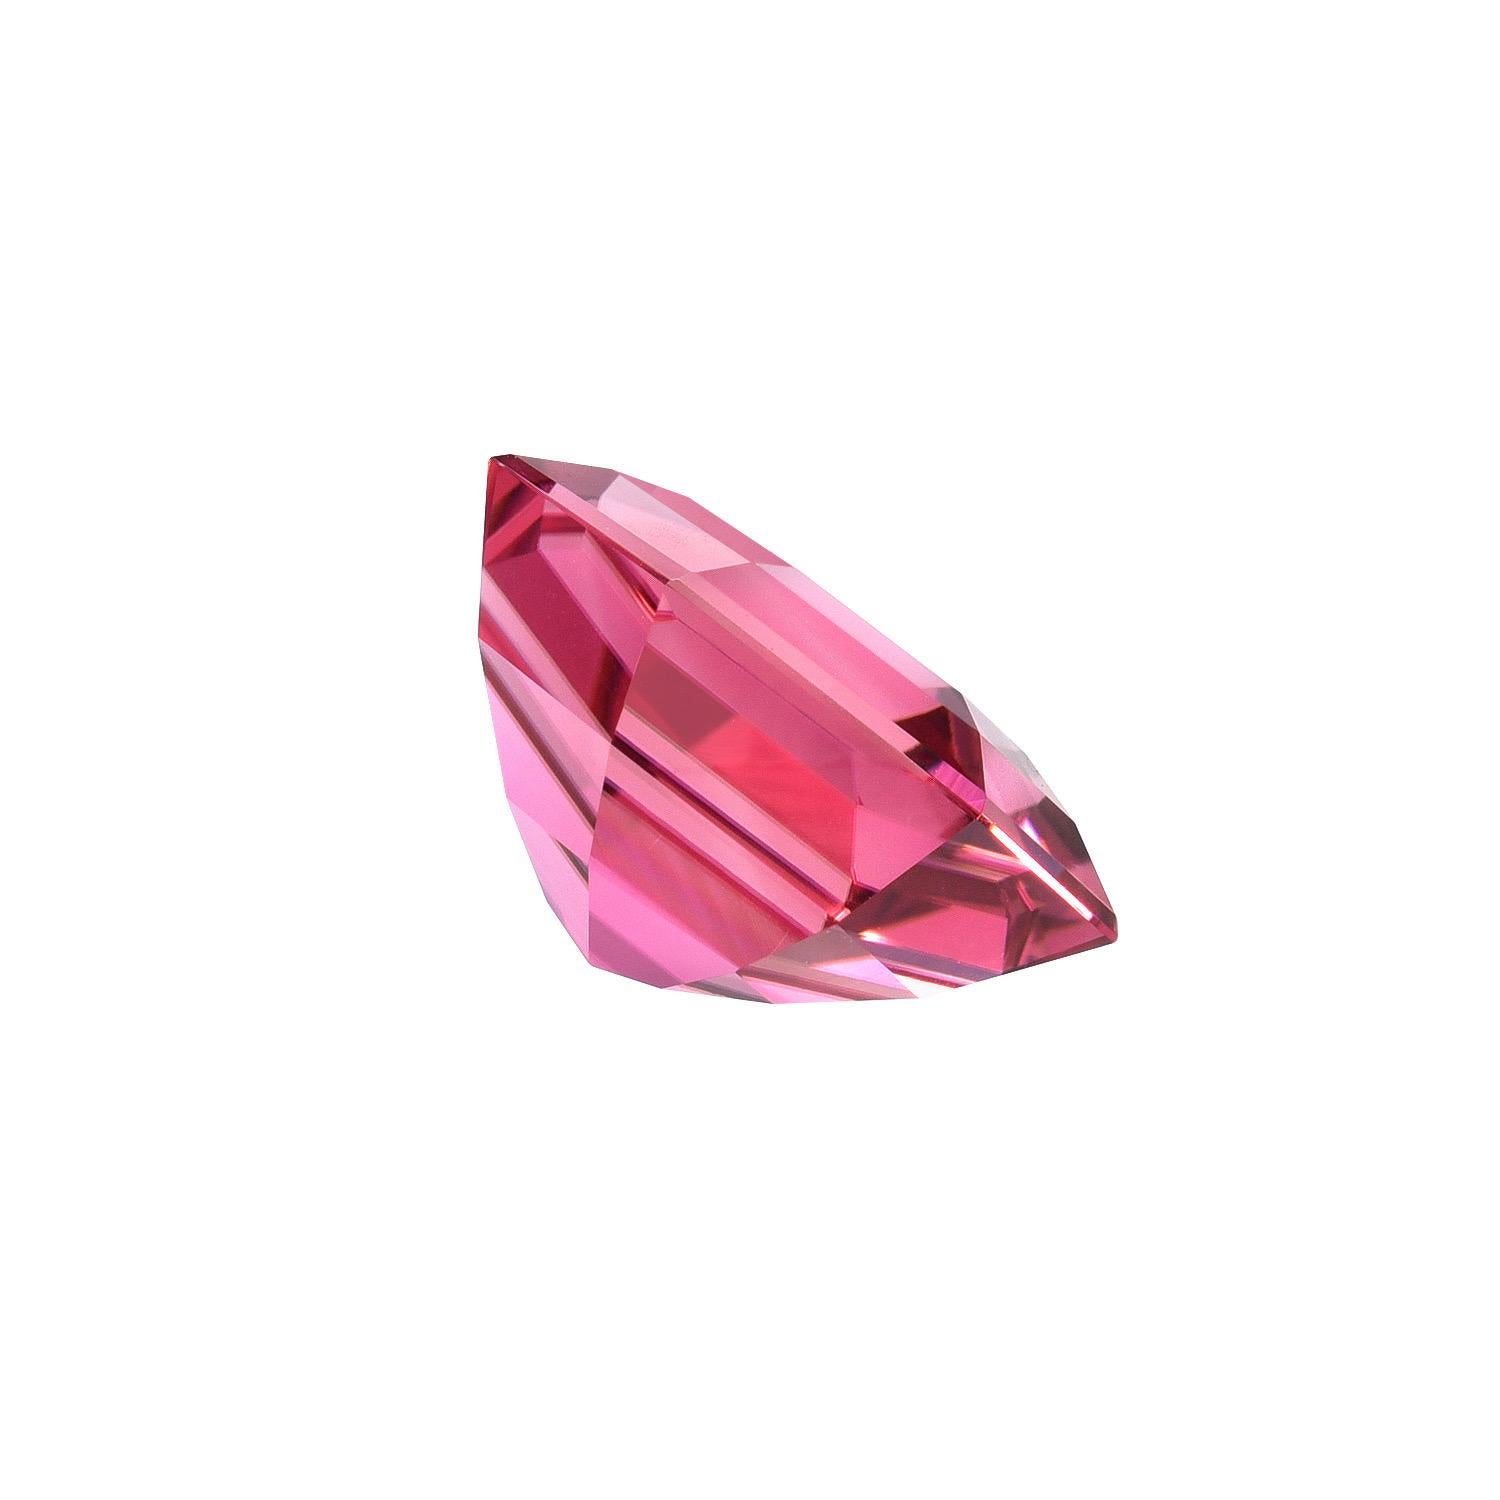 Tourmaline rose hexagonale ultra exclusive de 5,50 carats non montée offerte en vrac à un remarquable collectionneur de pierres précieuses.
Dimensions : 11,54 x 11,40 mm : 11,54 x 11,40 mm.
Les retours sont acceptés et pris en charge dans les sept